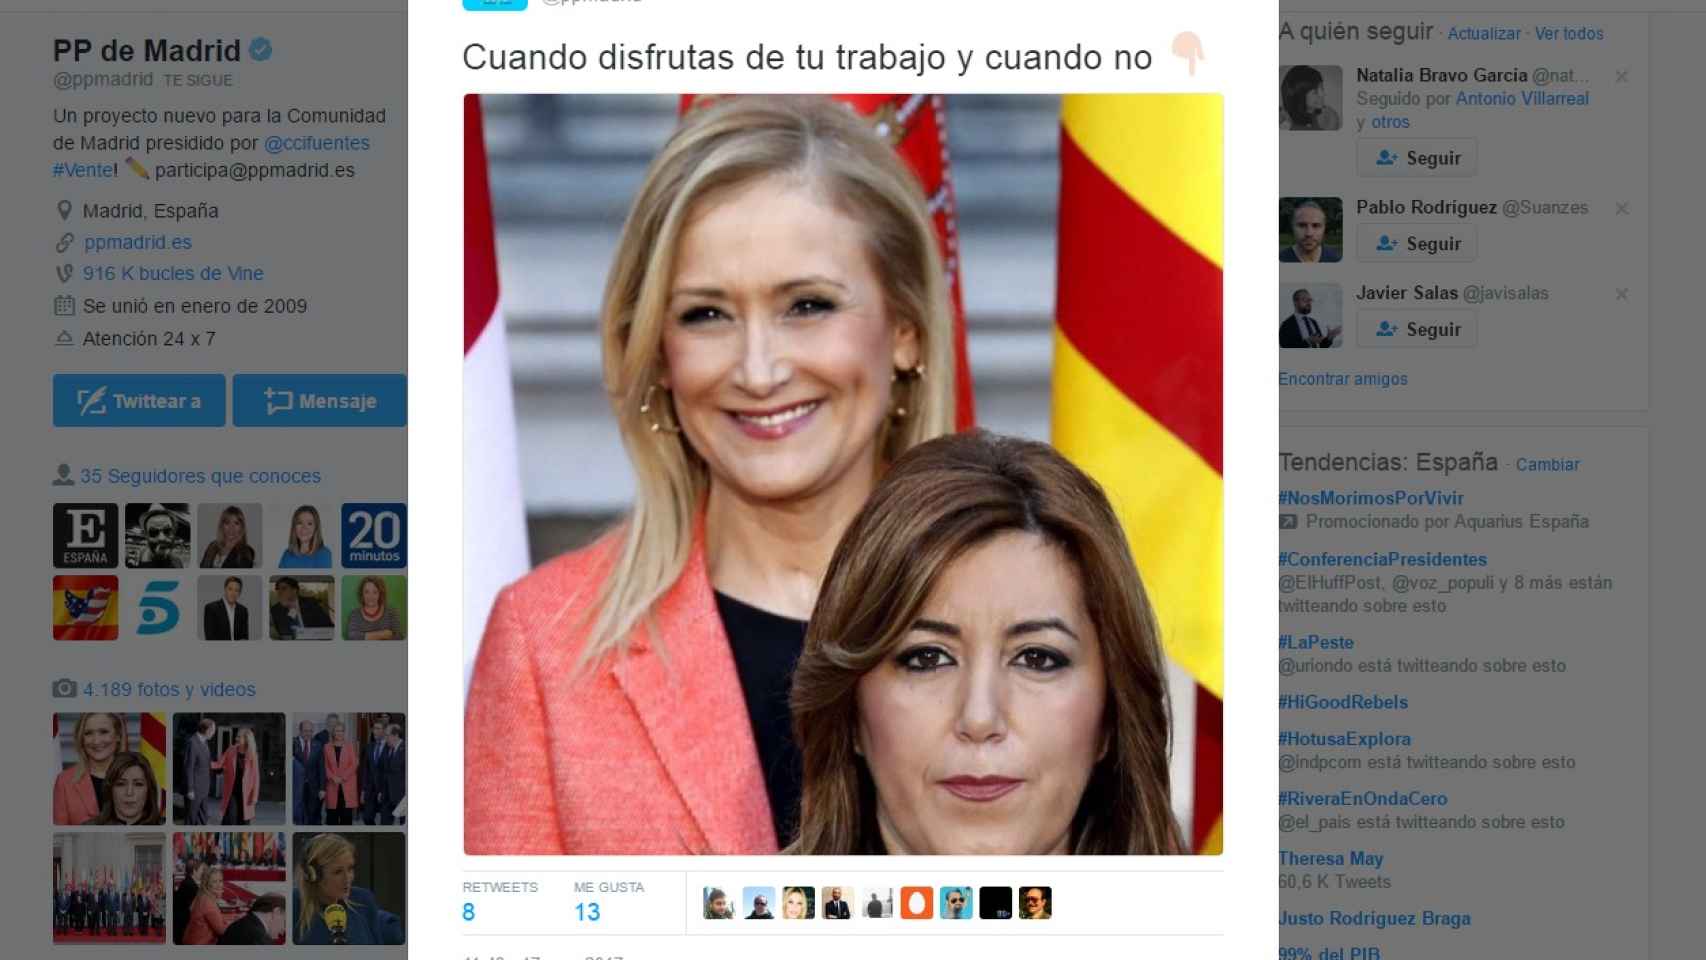 El tuit del PP de Madrid que se burla de Susana Díaz.